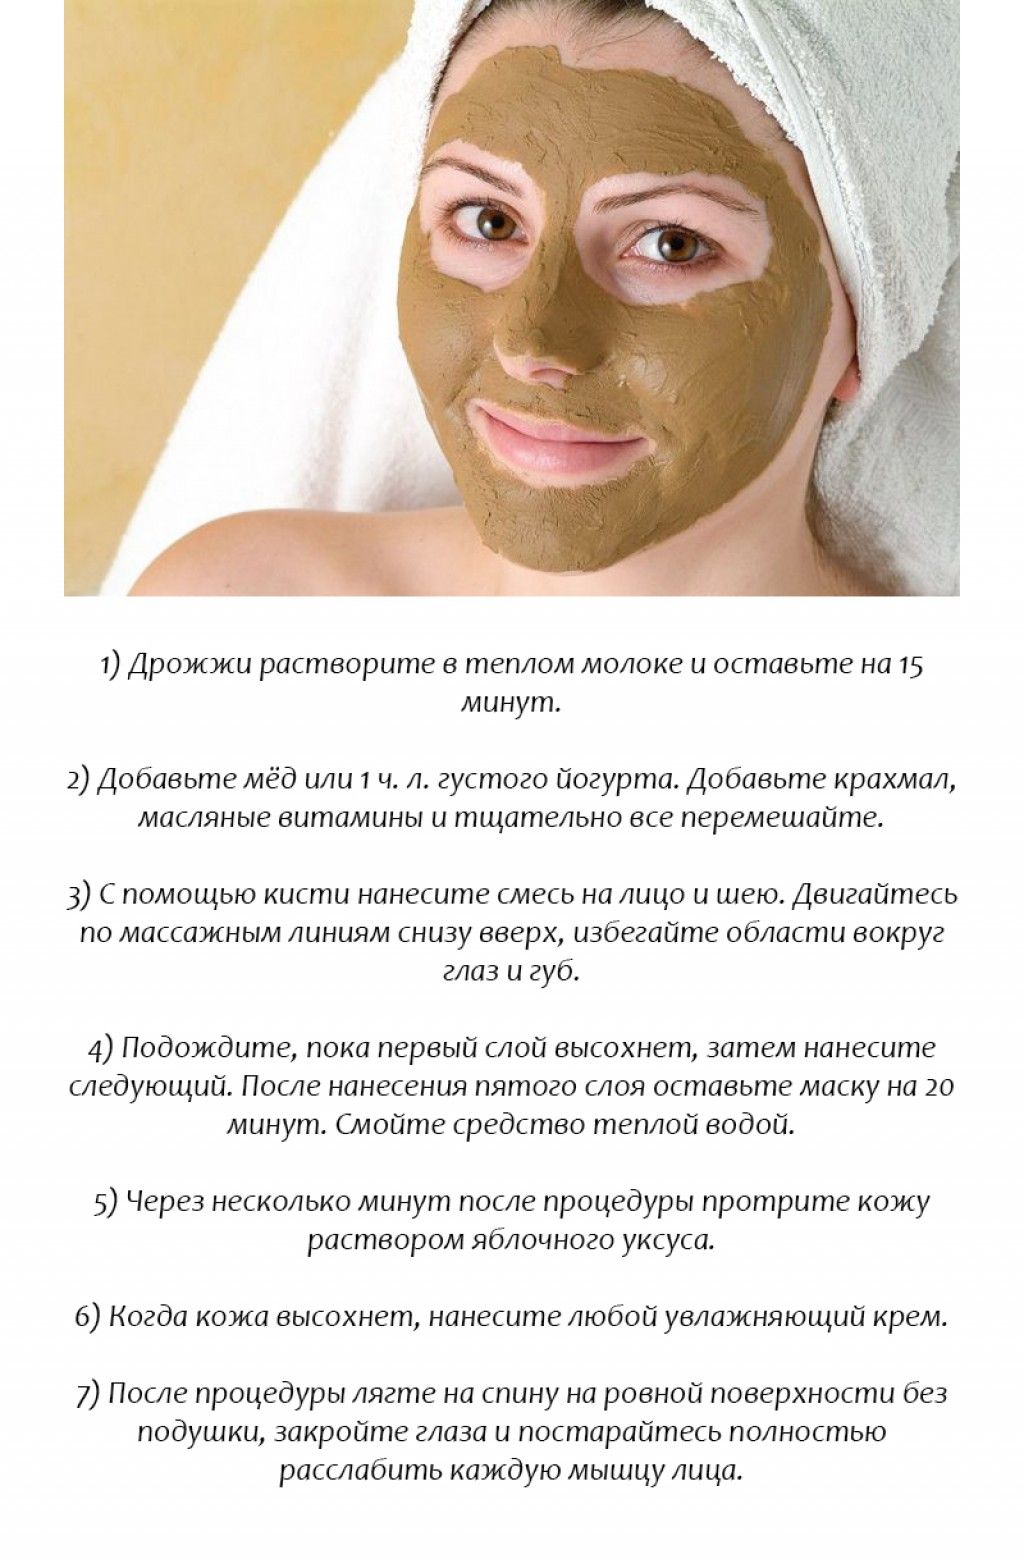 Рецепт омолаживающей маски в домашних условиях. М̆̈ӑ̈с̆̈к̆̈й̈ д̆̈л̆̈я̆̈ л̆̈й̈ц̆̈ӑ̈. Маска для лица. Рецептуры масок для лица. Маска для лица от морщин.